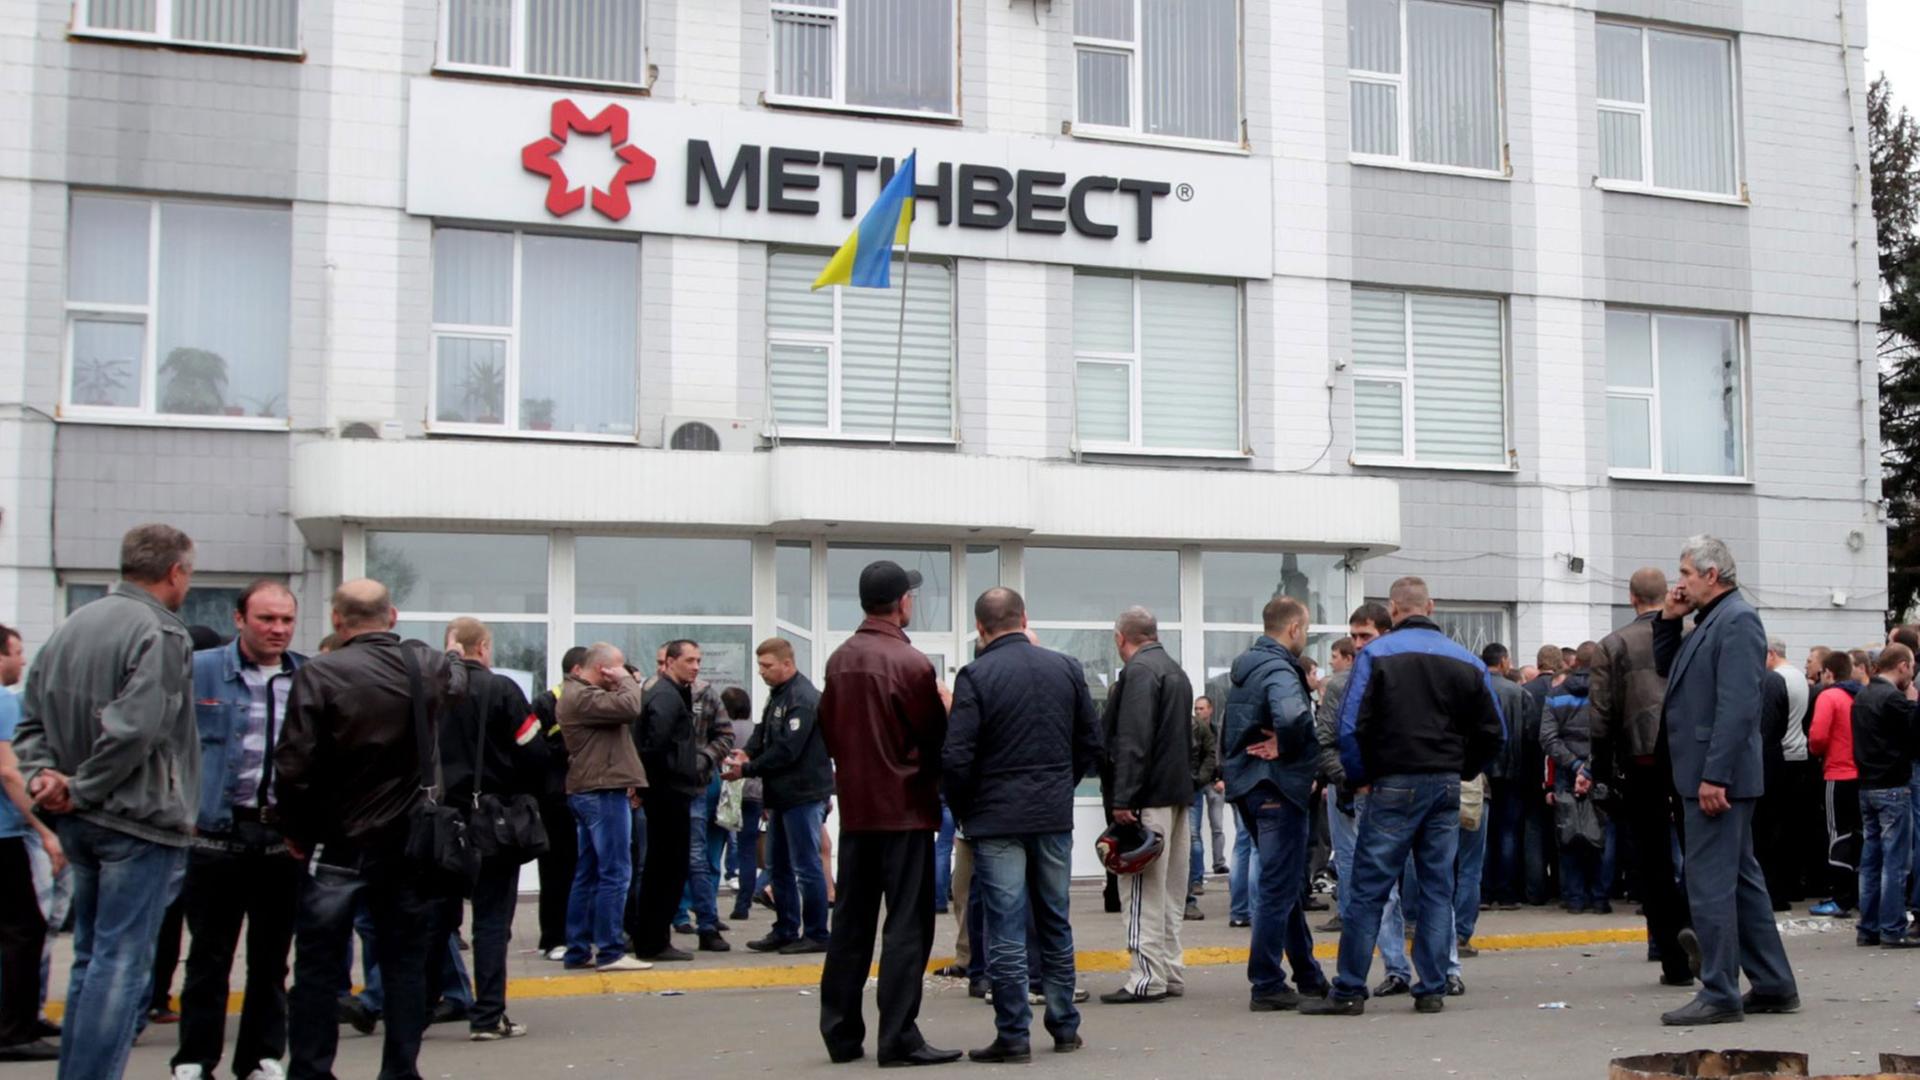 Ukrainische Bergarbeiter demonstrieren vor dem Bürogebäude eines Bergbauunternehmens in der ukrainischen Stadt Krasnodon.